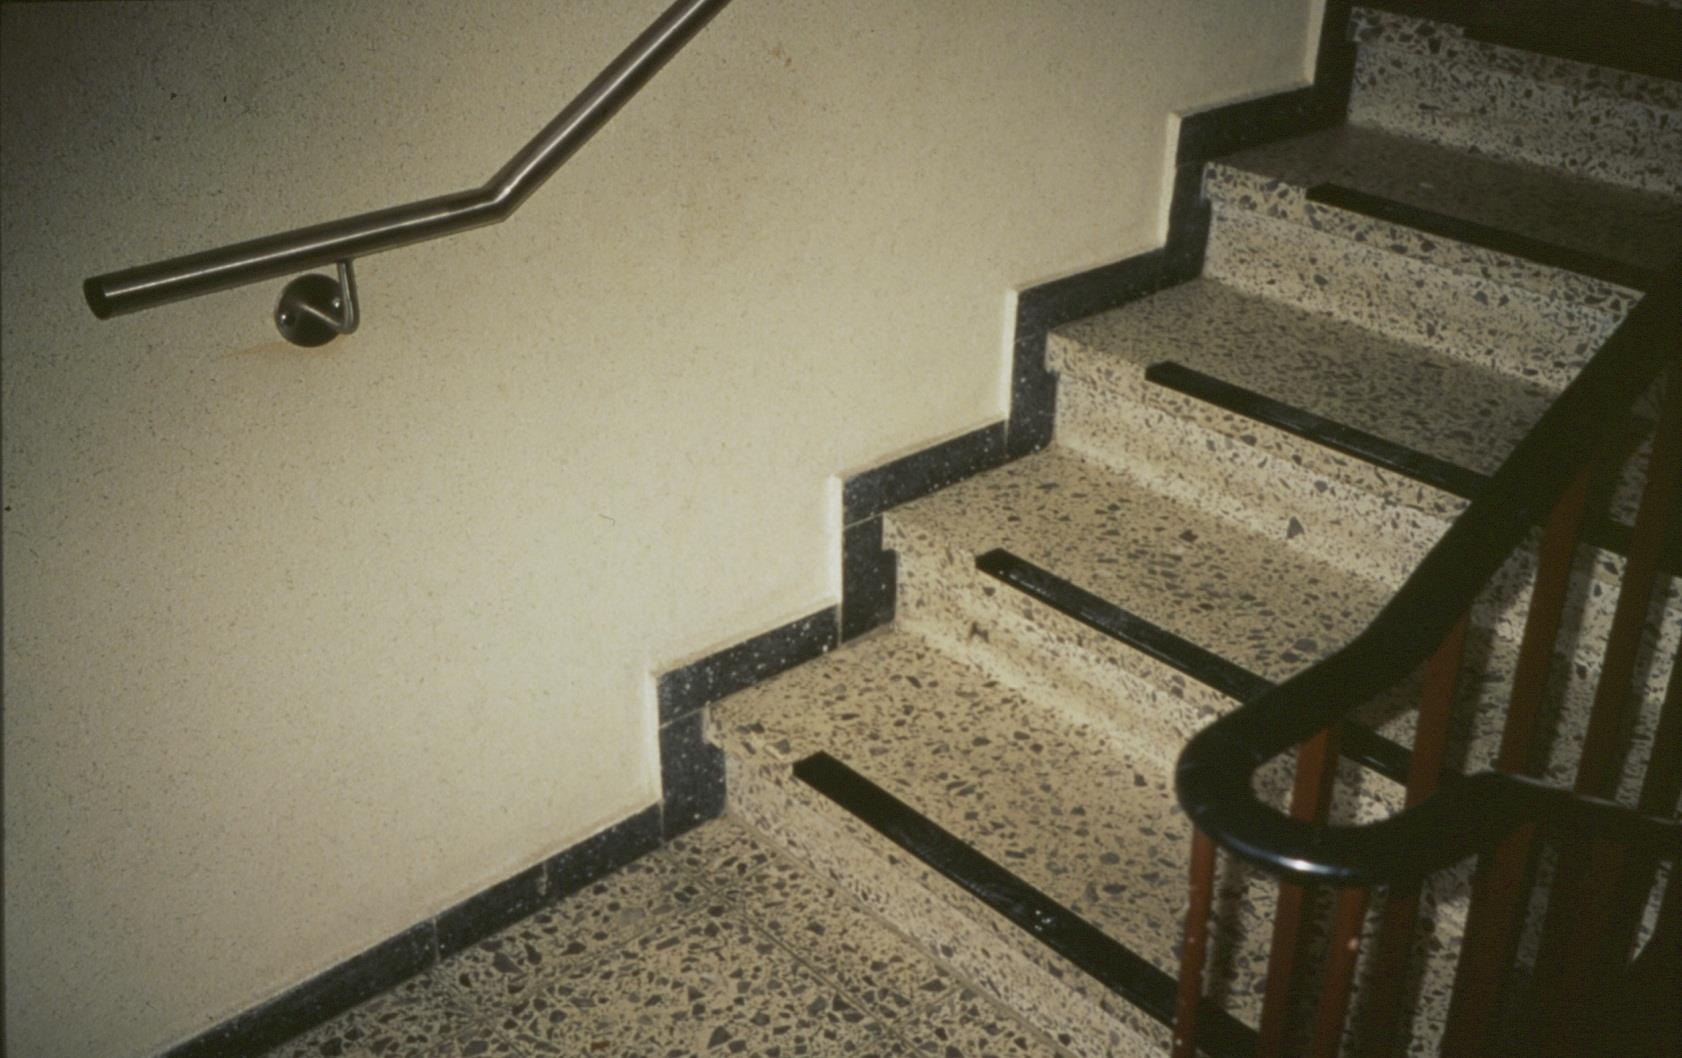 Zweites Geländer im Treppenhaus Kontrastreiche Markierung der Stufen